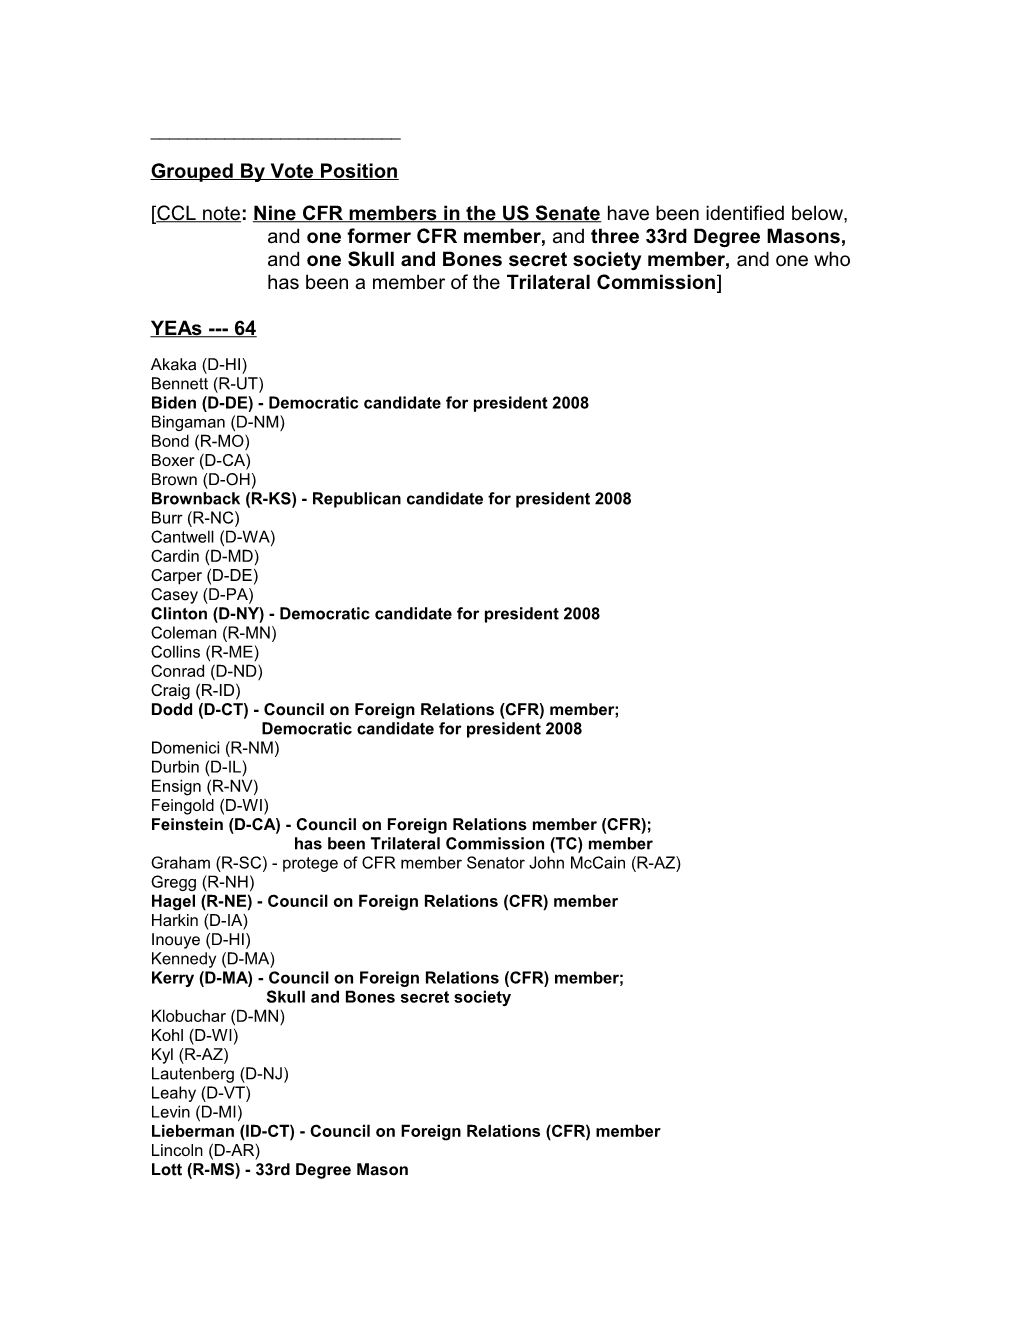 64 - 35 Senate Roll Call Cloture Vote Revives Amnesty Bill - June 26, 2007